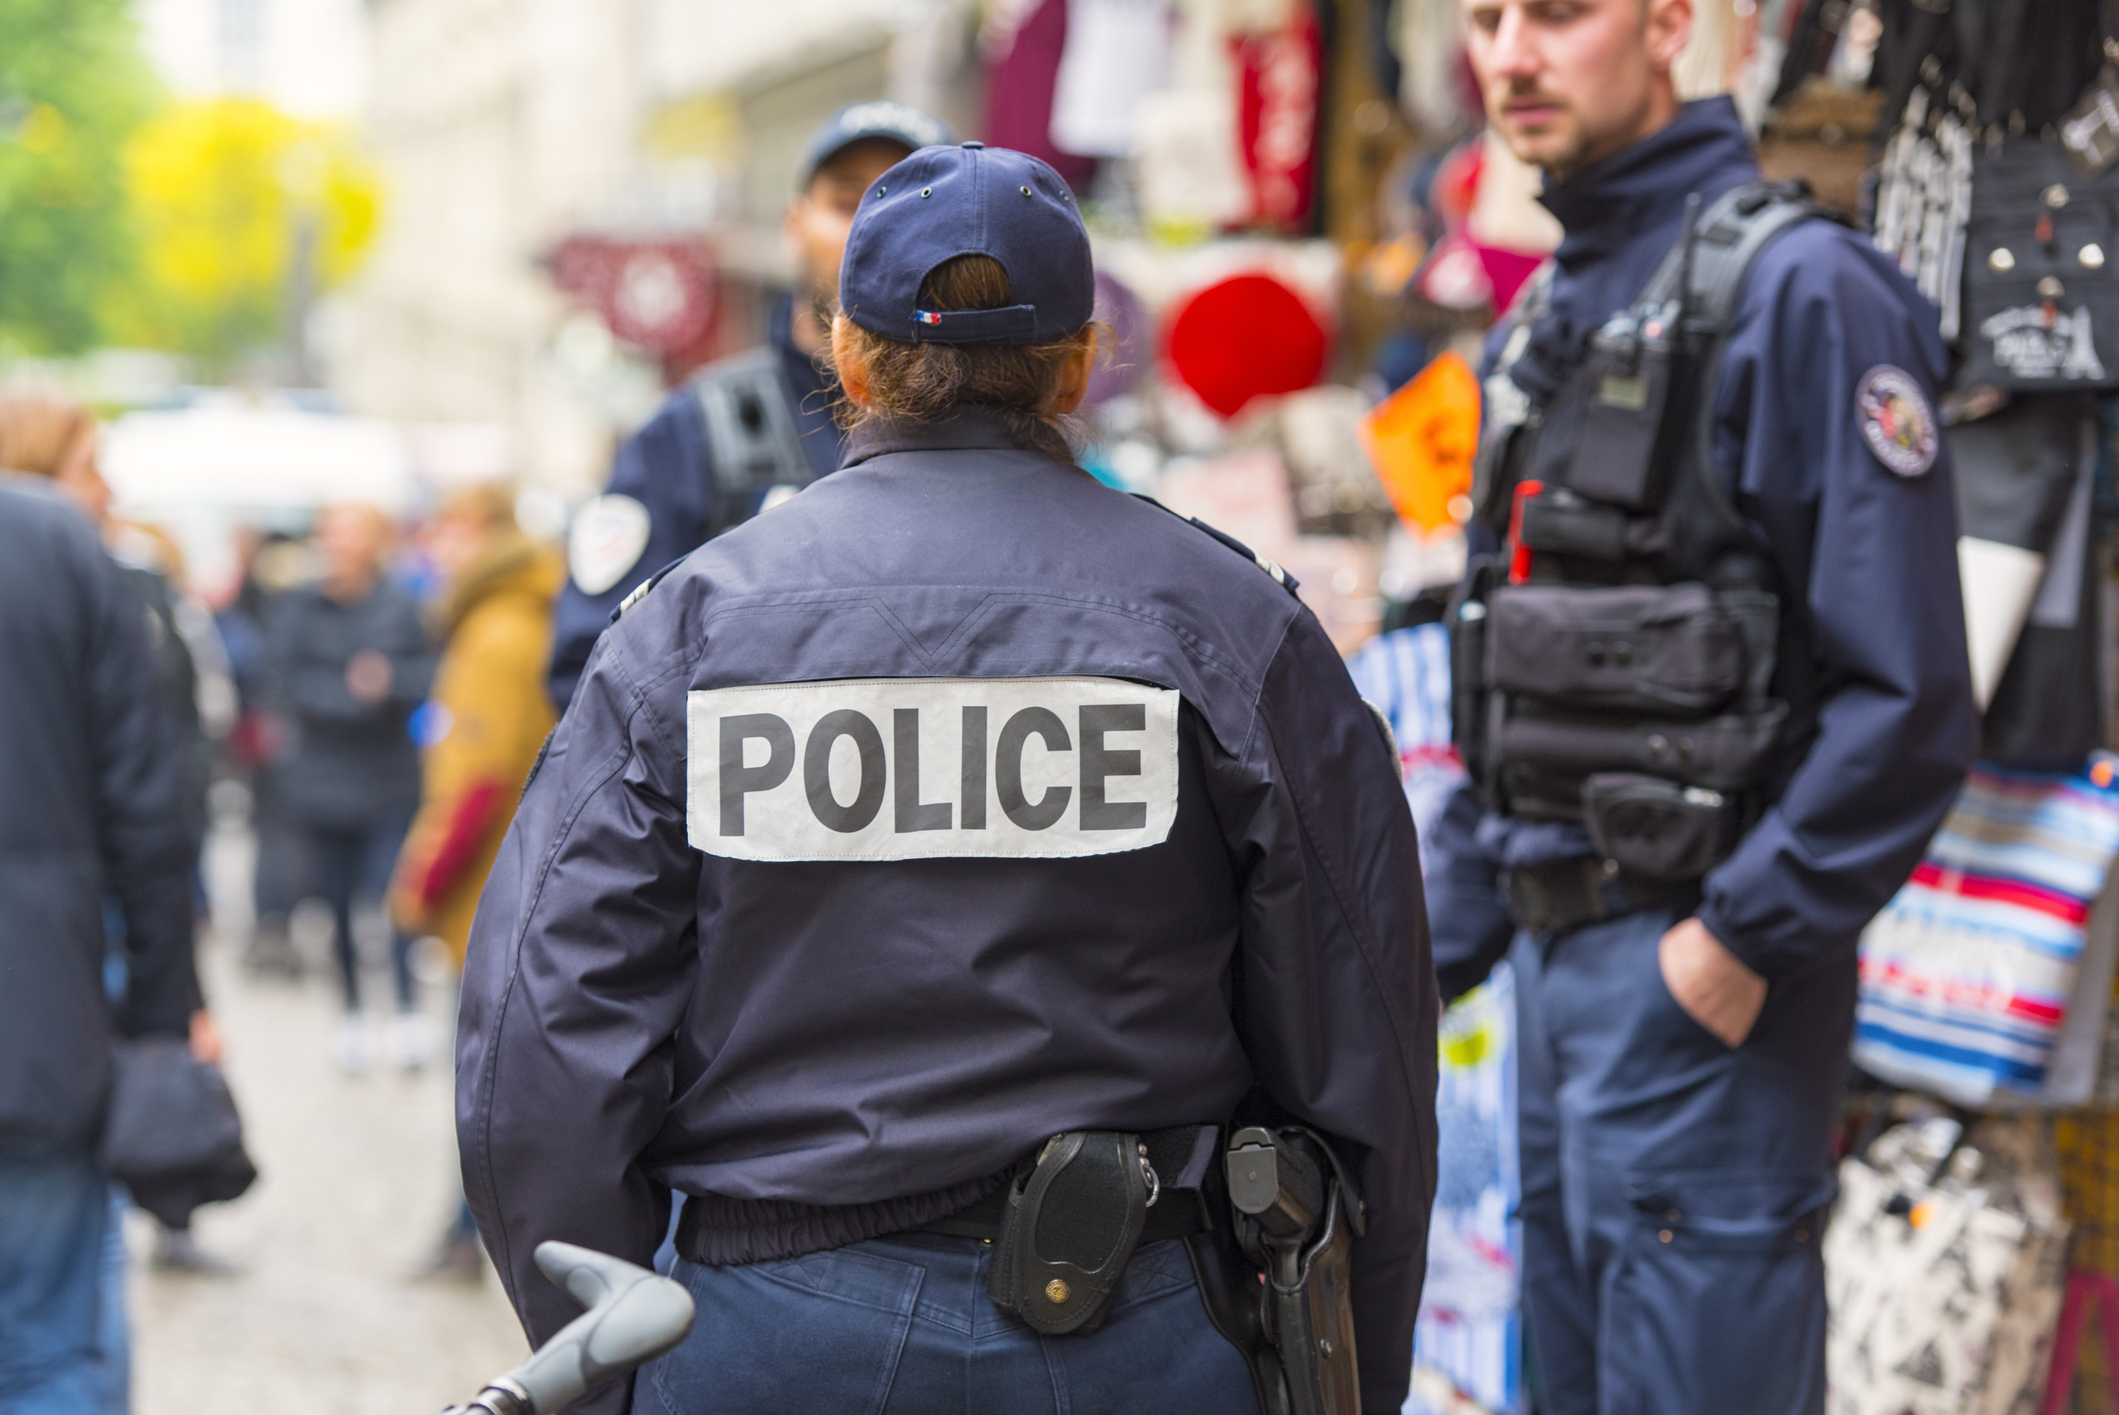 مكافحة الإرهاب في فرنسا ـ مساعي لتجنيد النساء